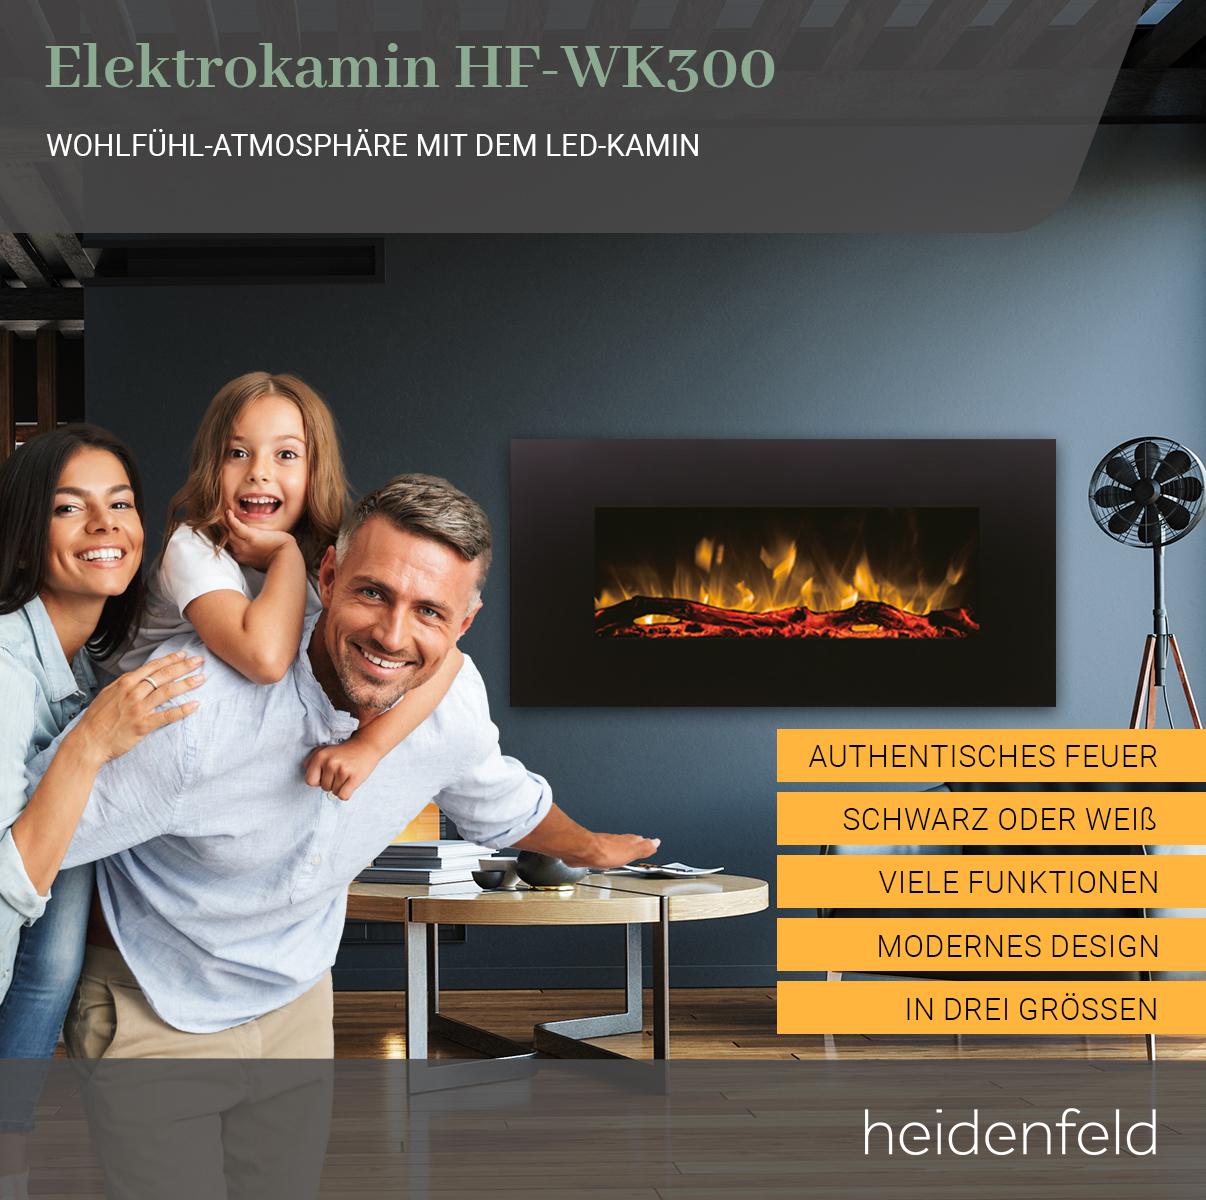 45.0 Watt) 84.0 Elektrokamin cm Wandkamin x (1500 HF-WK300 HEIDENFELD